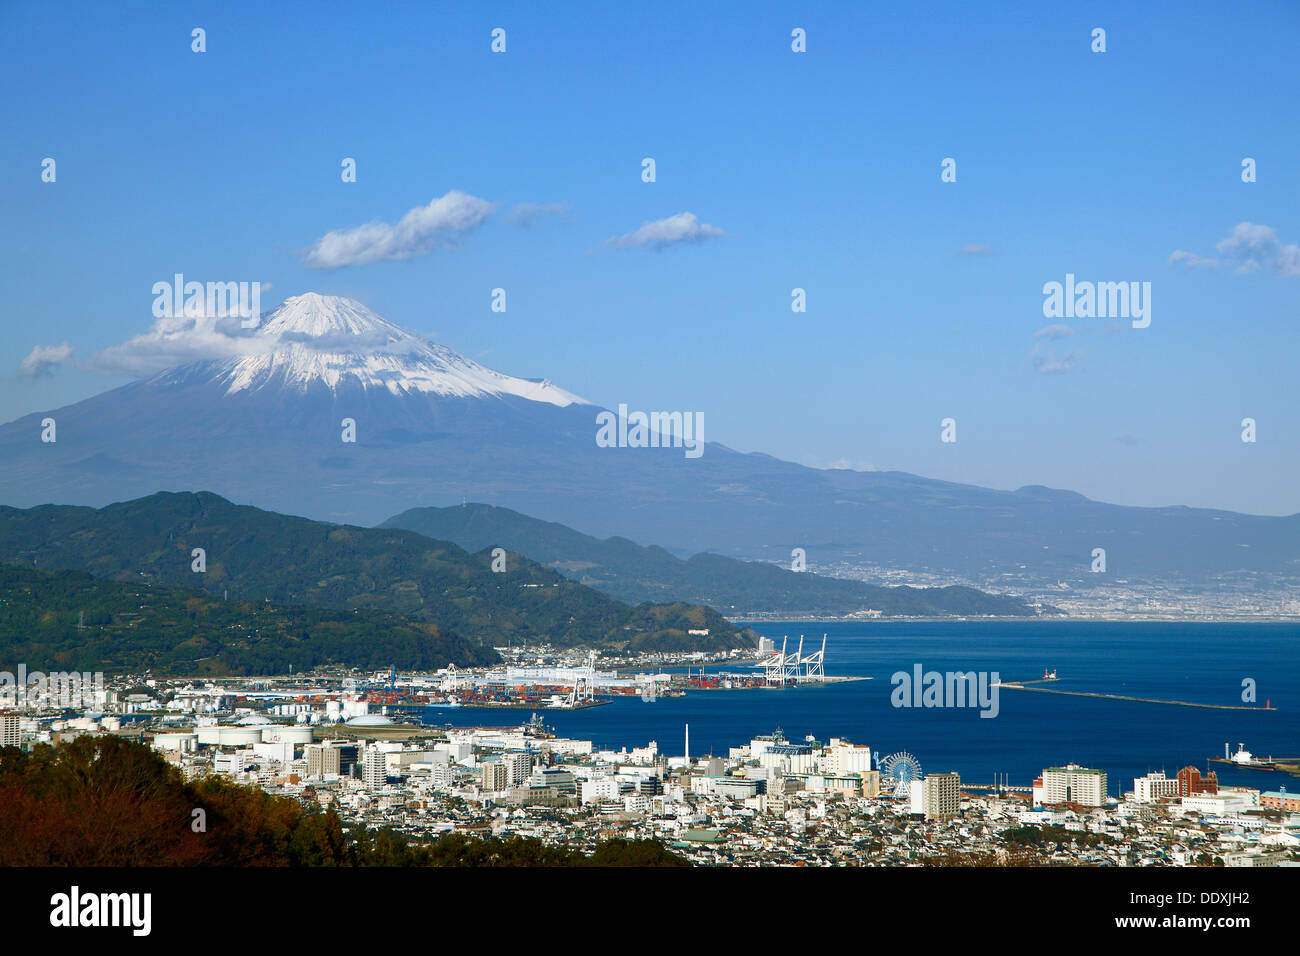 Mount Fuji and Shimizu harbor, Shizuoka Prefecture Stock Photo